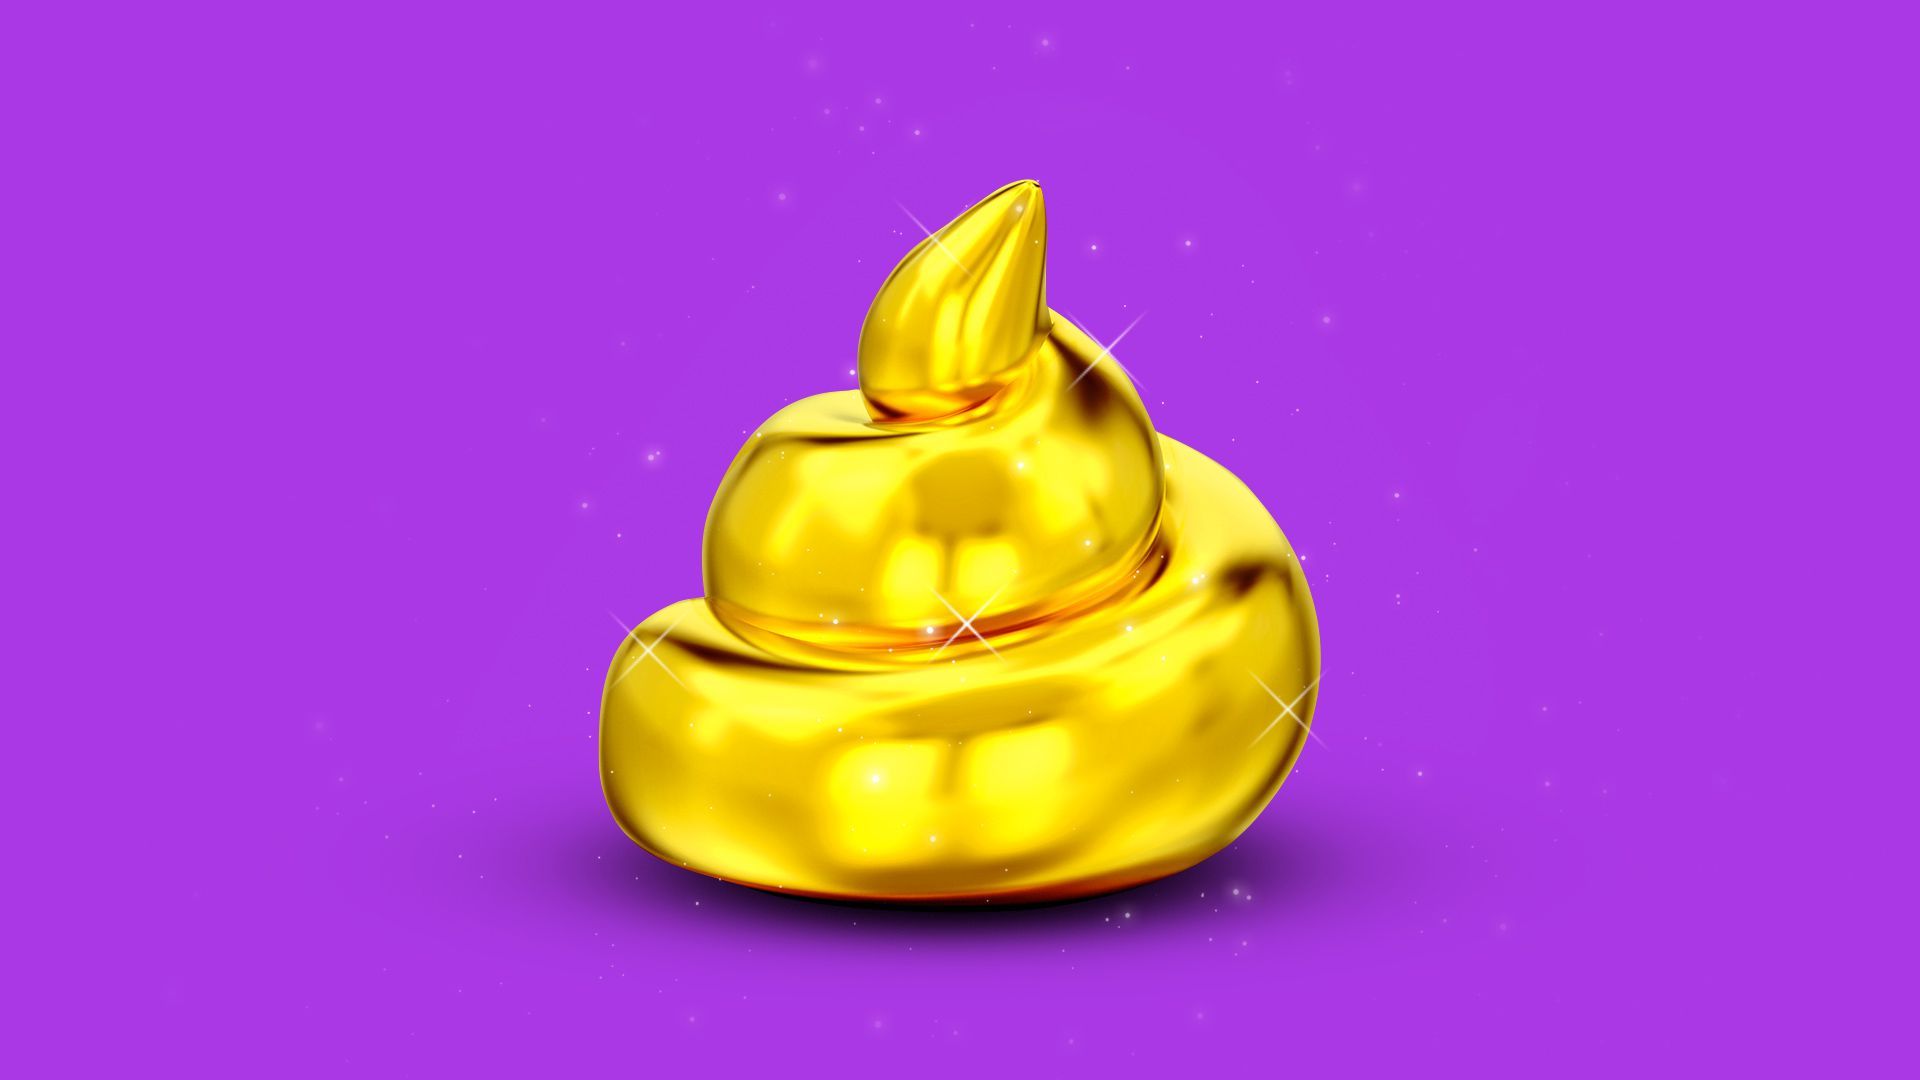 Illustration of a golden, sparkling pile of poop.